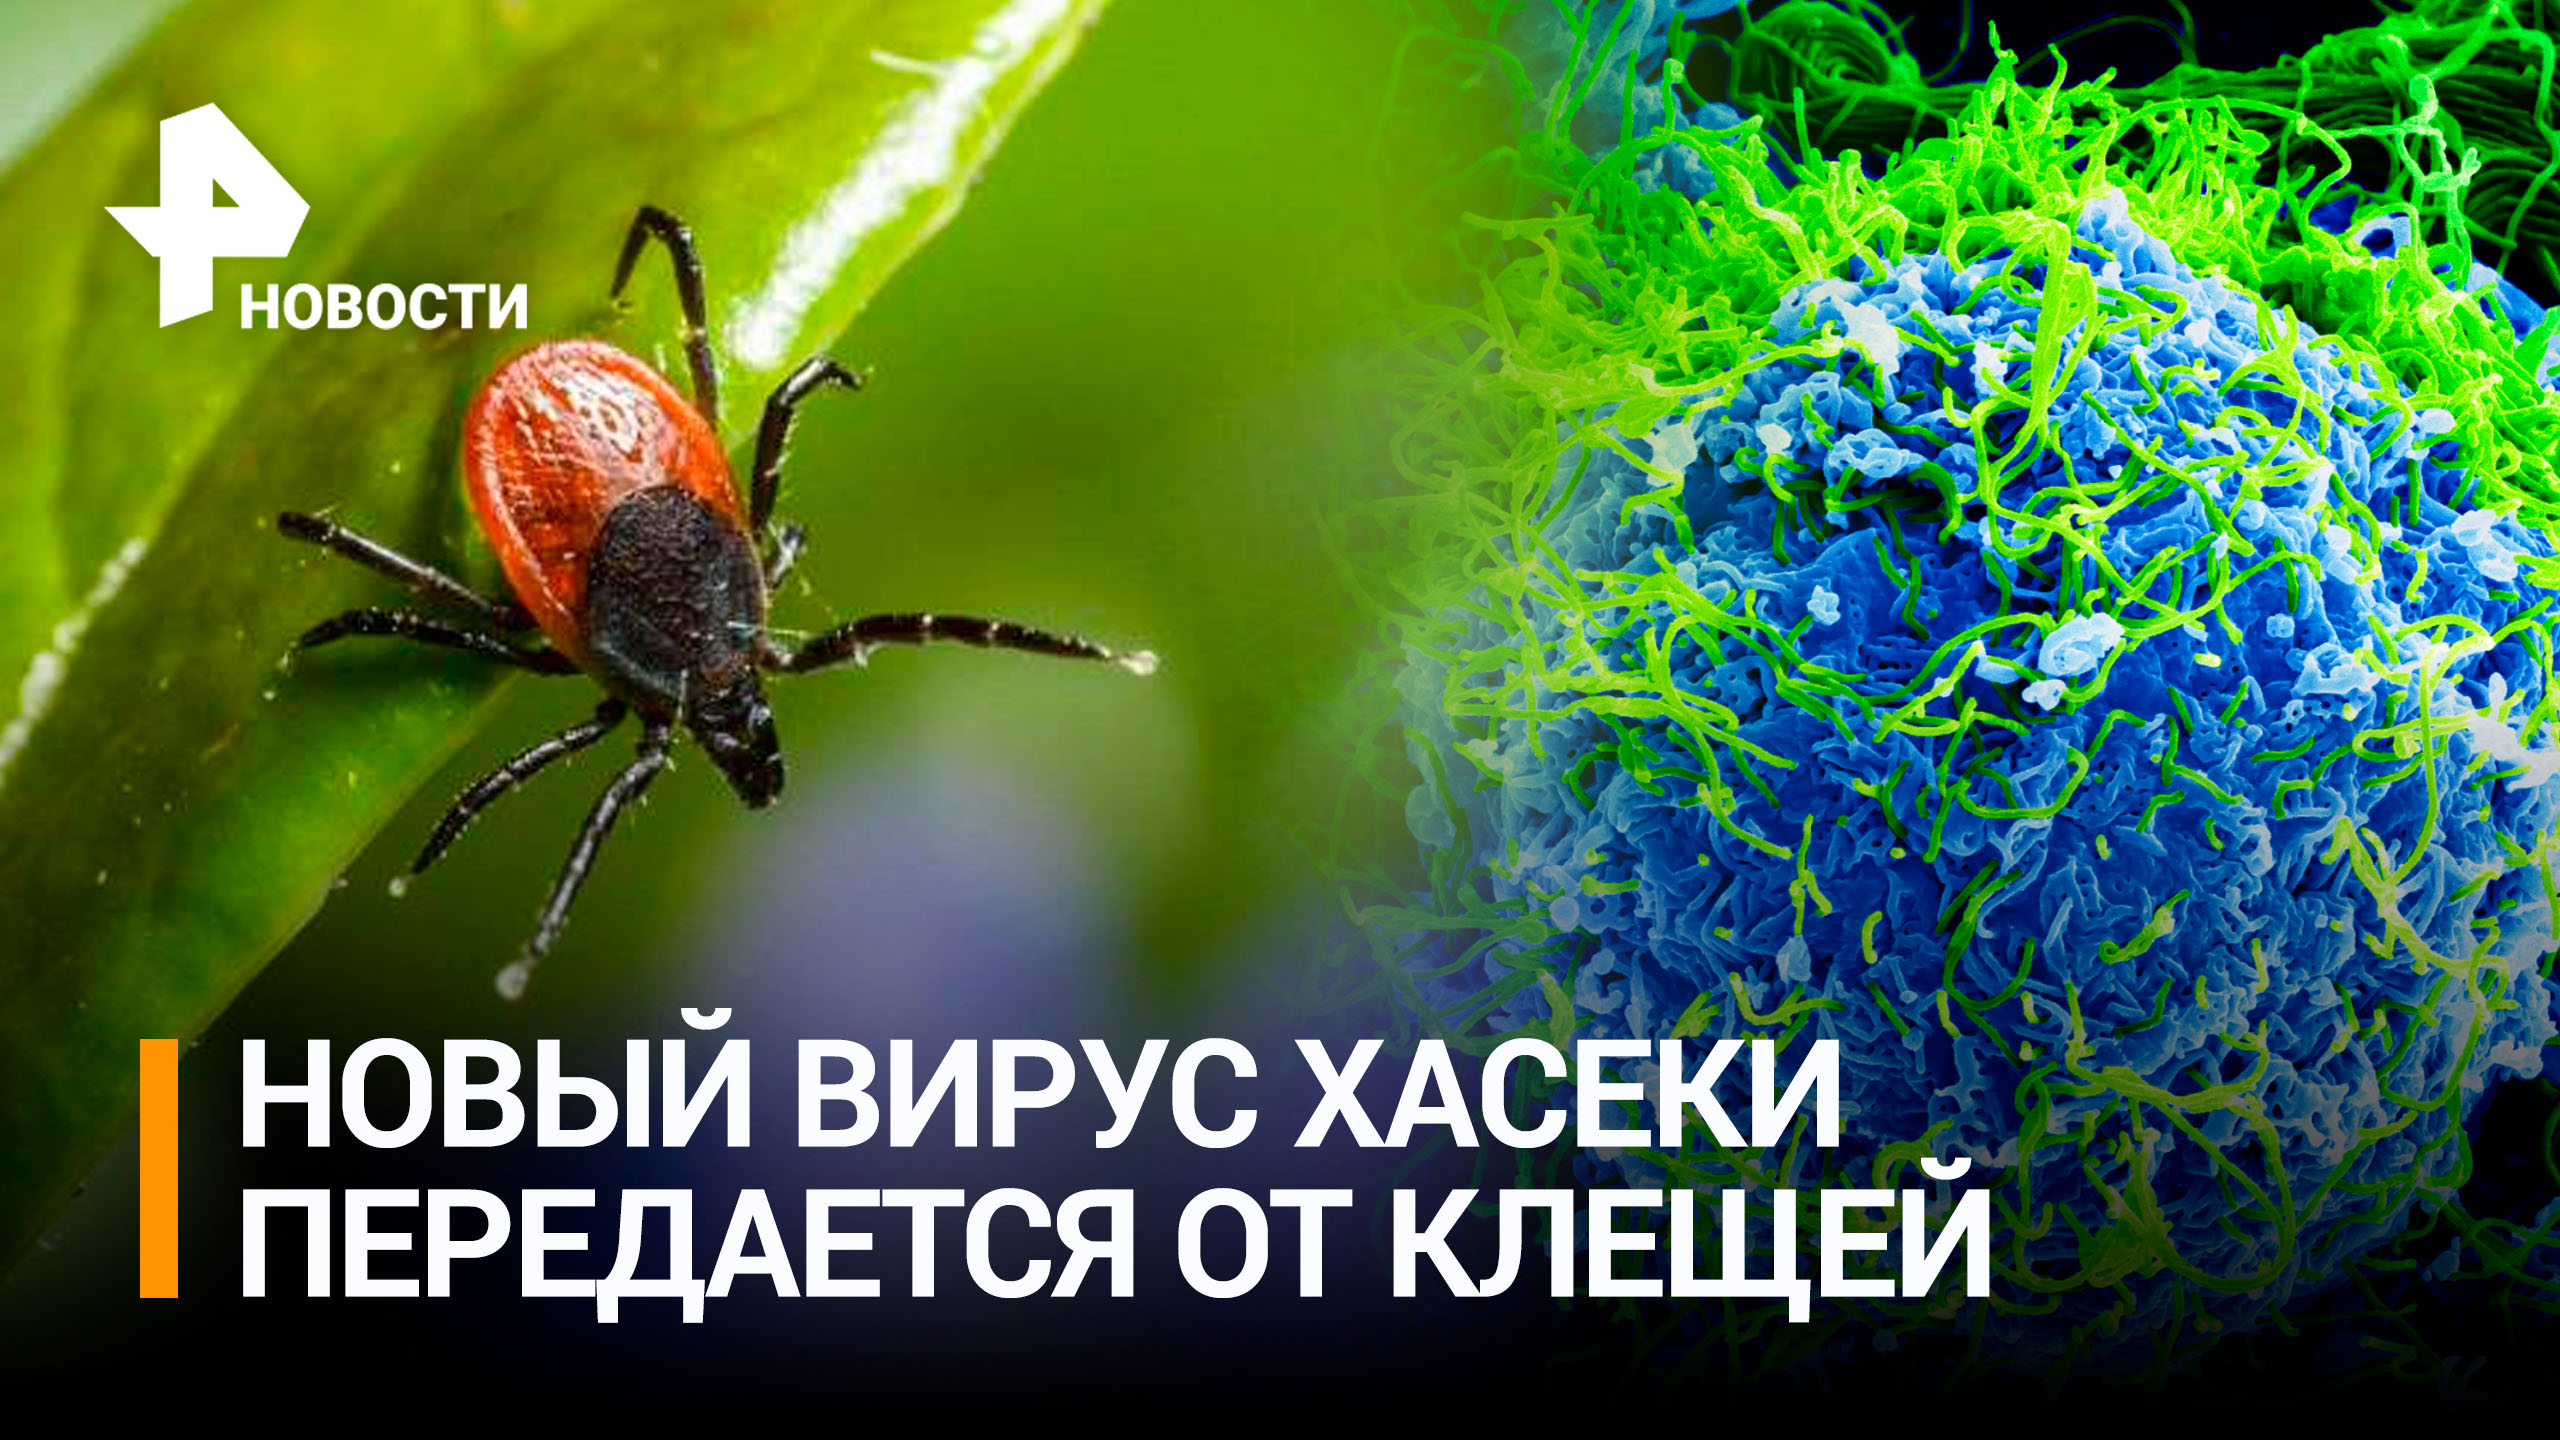 В России обнаружили новый вирус Хасеки, передающийся от клещей / РЕН Новости